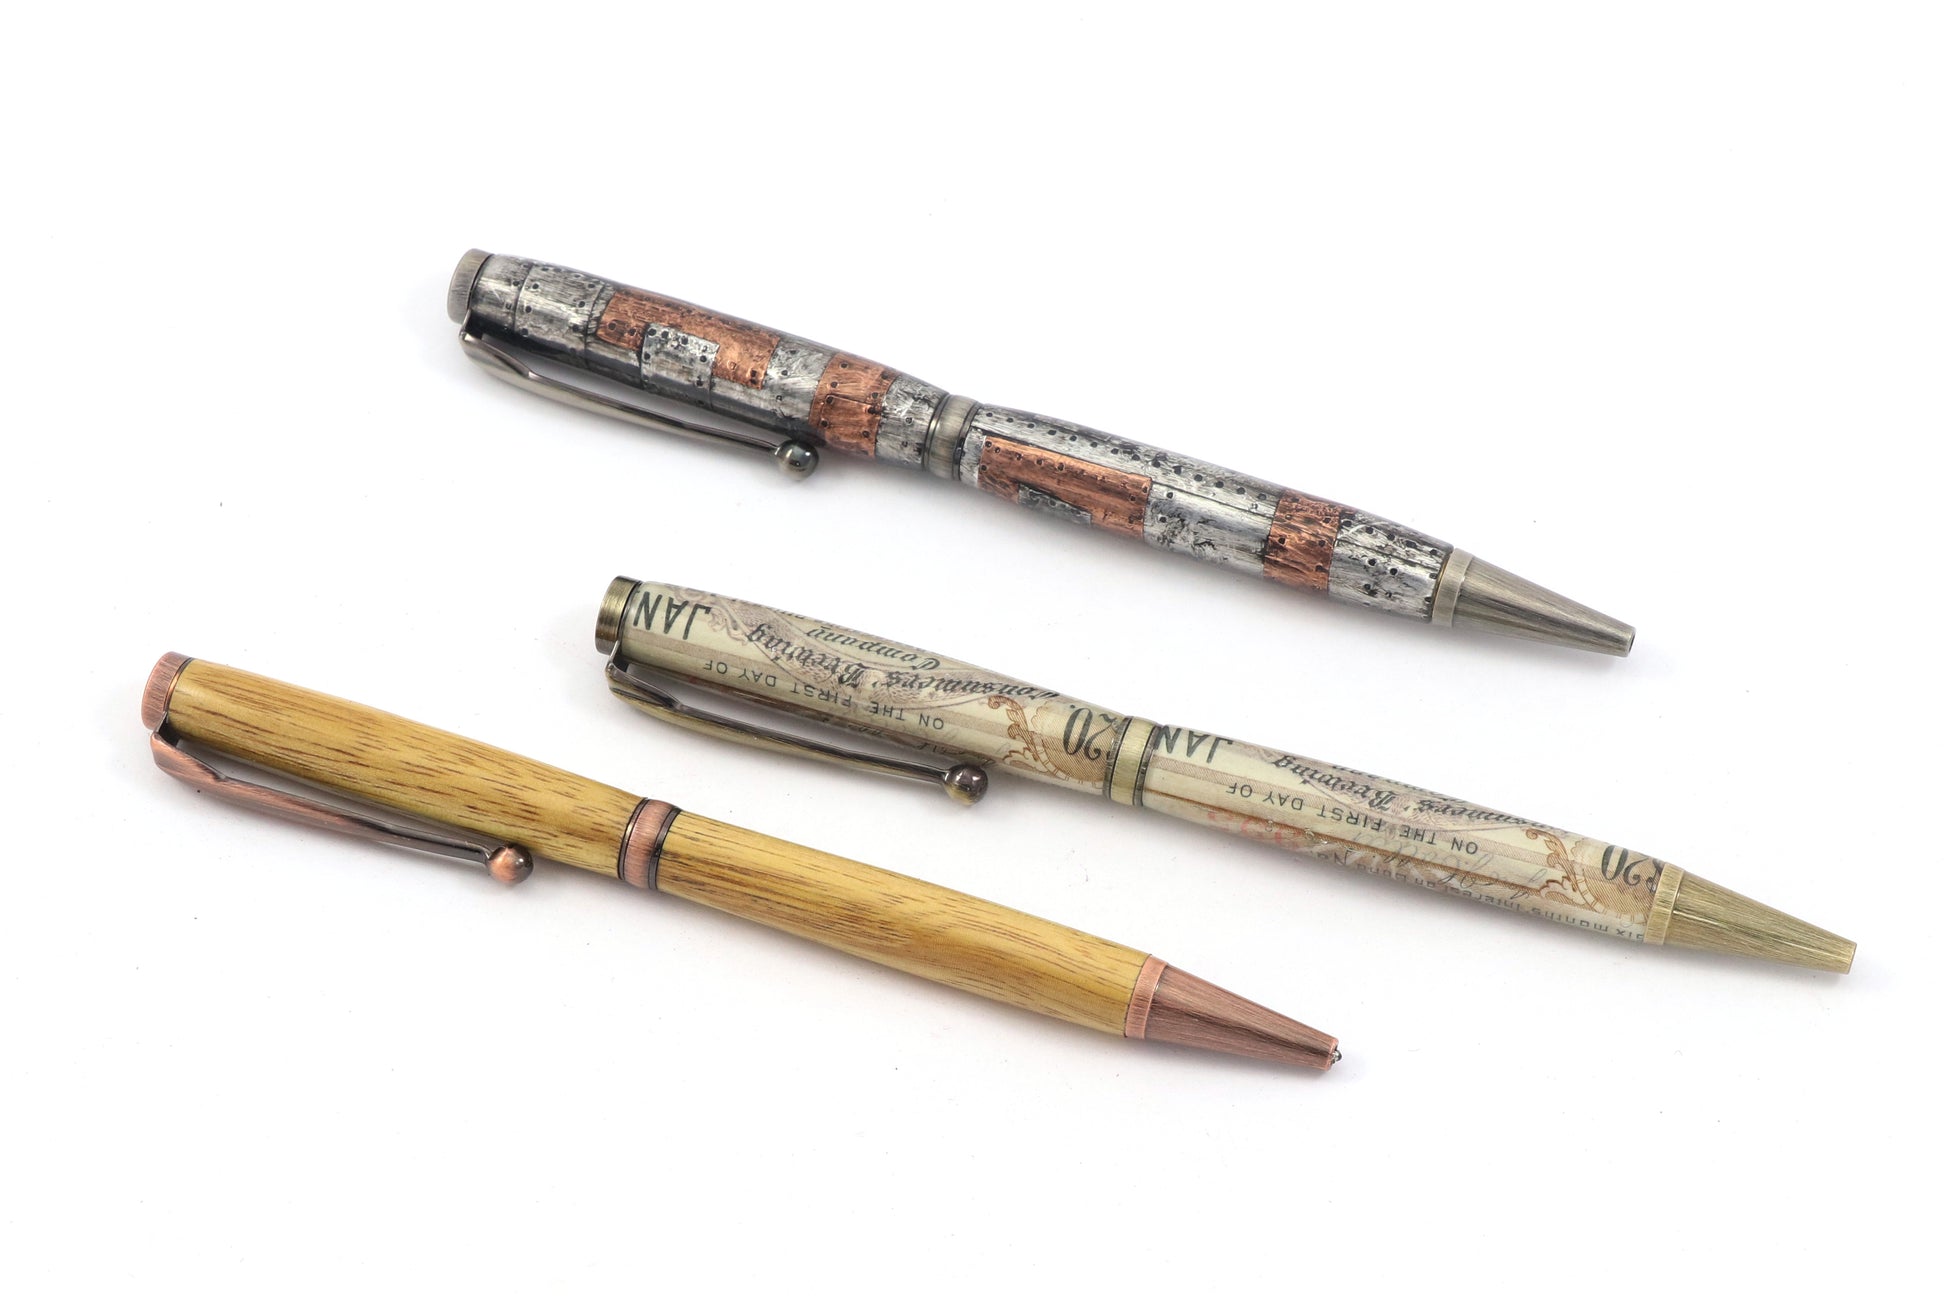 Fancy Slimline Antique Starter Set Pen Kit 